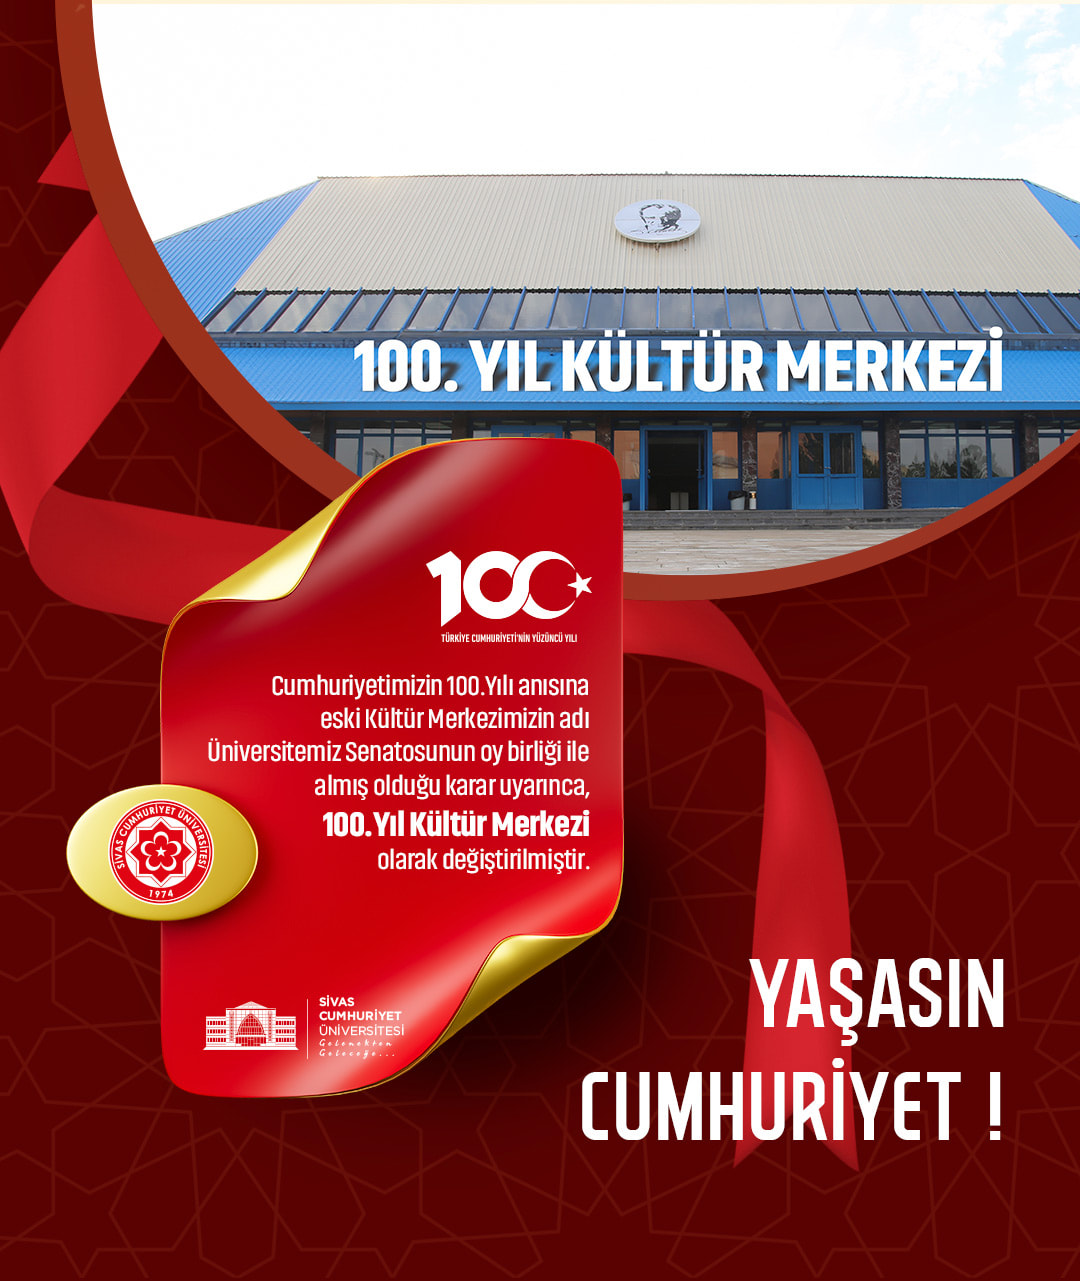 Cumhuriyet’in 100.Yılı anısına Cumhuriyet Üniversitesi Kültür Merkezi 100.Yıl Kültür Merkezi oldu